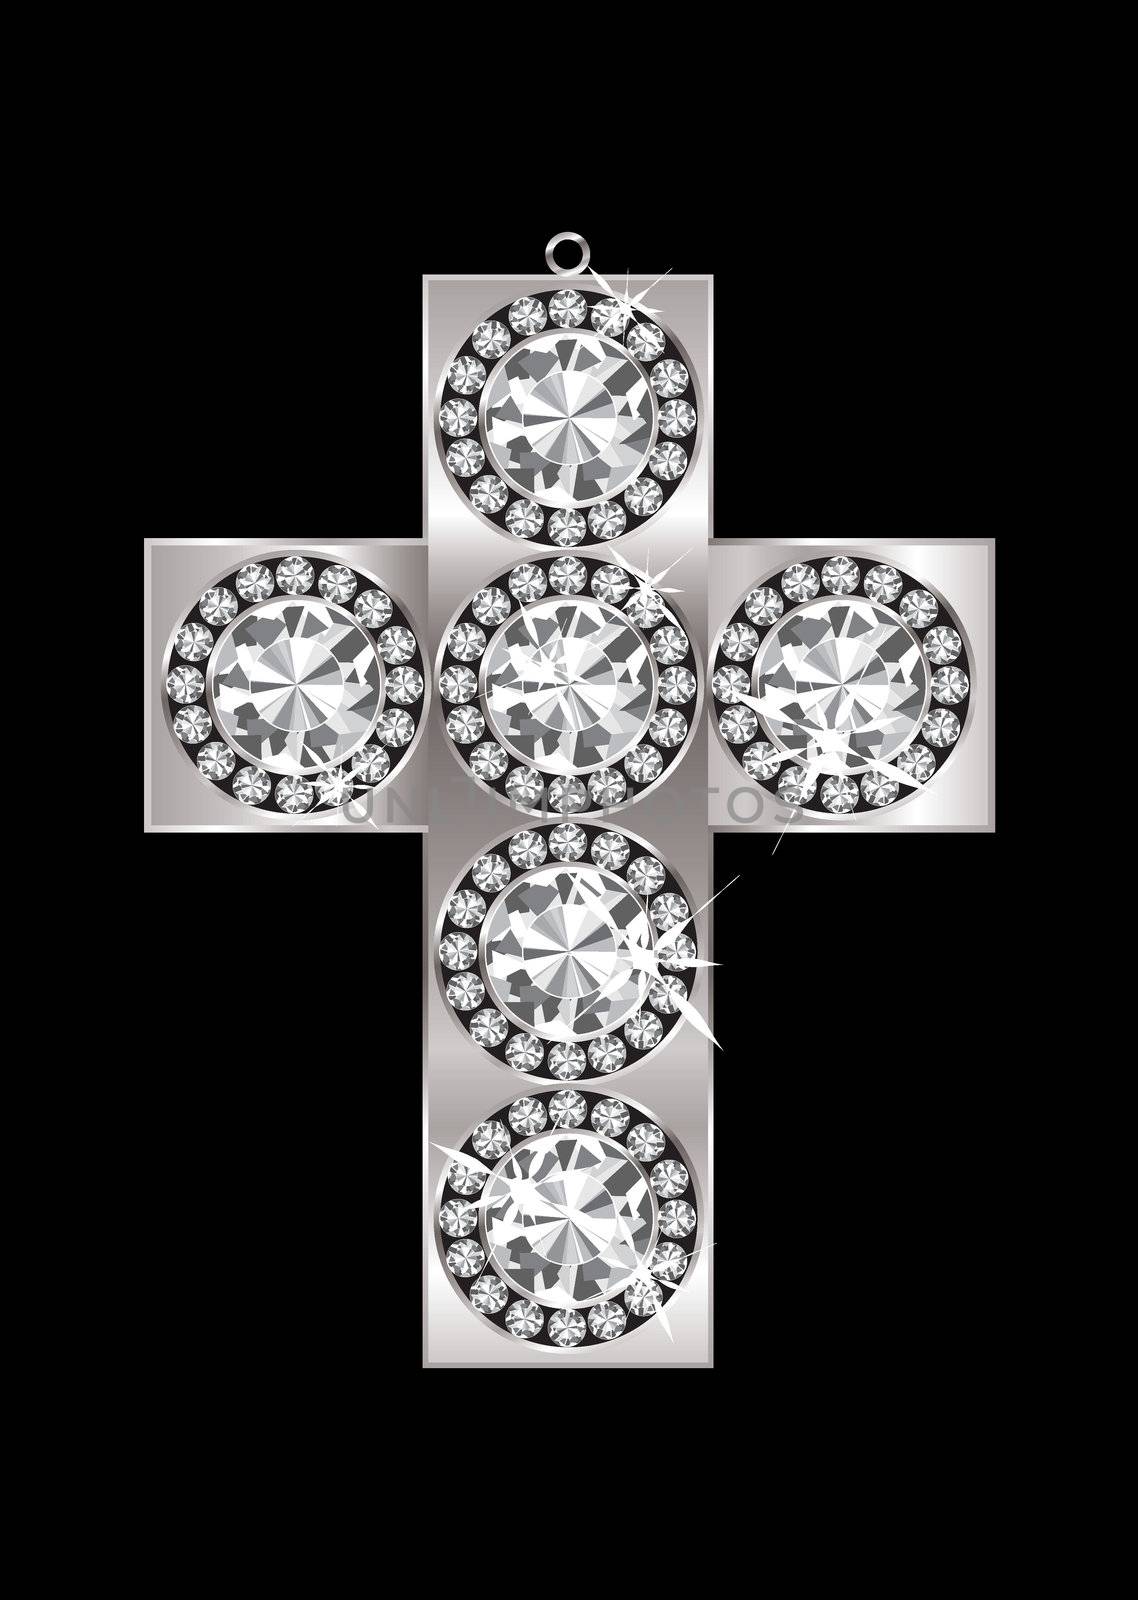 Diamond pendant crucifix by nicemonkey